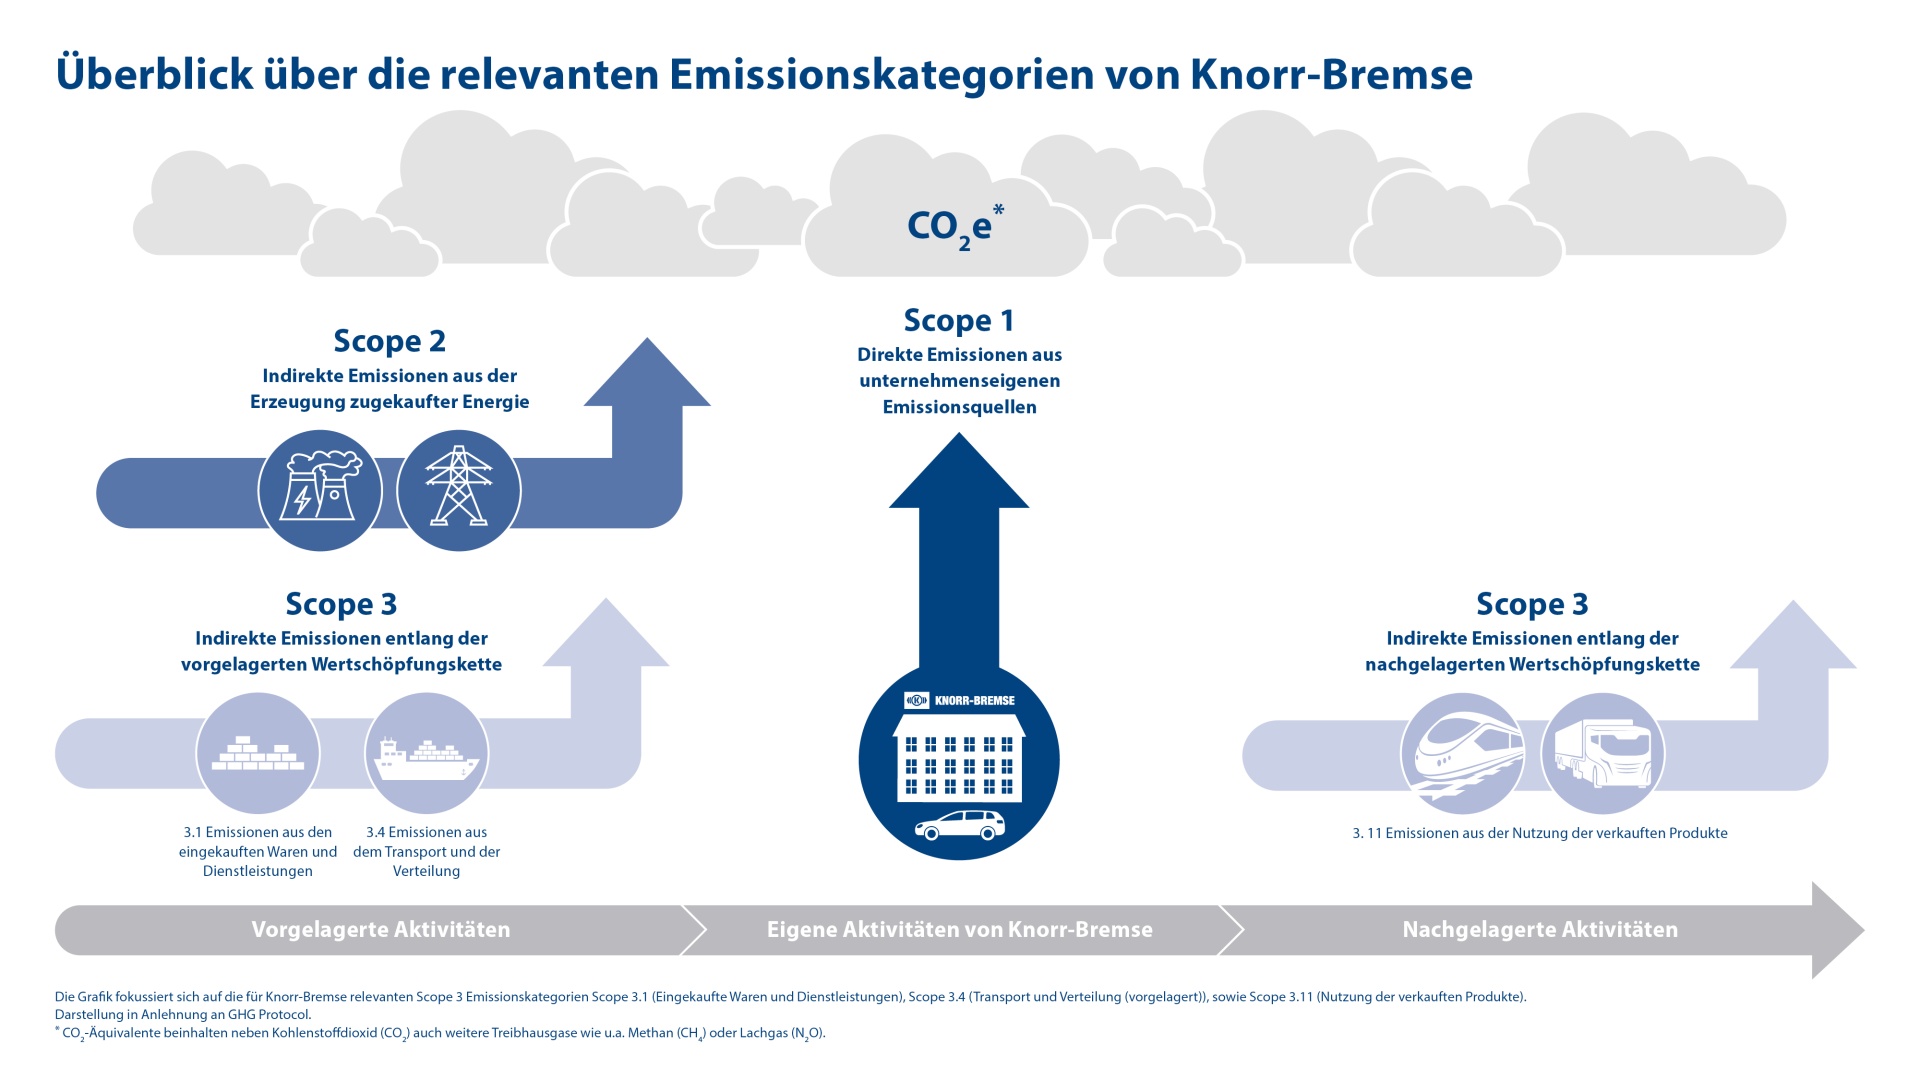 Grafische Darstellung der relevanten Emissionskategorien (Scope 1 bis Scope 3) von Knorr-Bremse